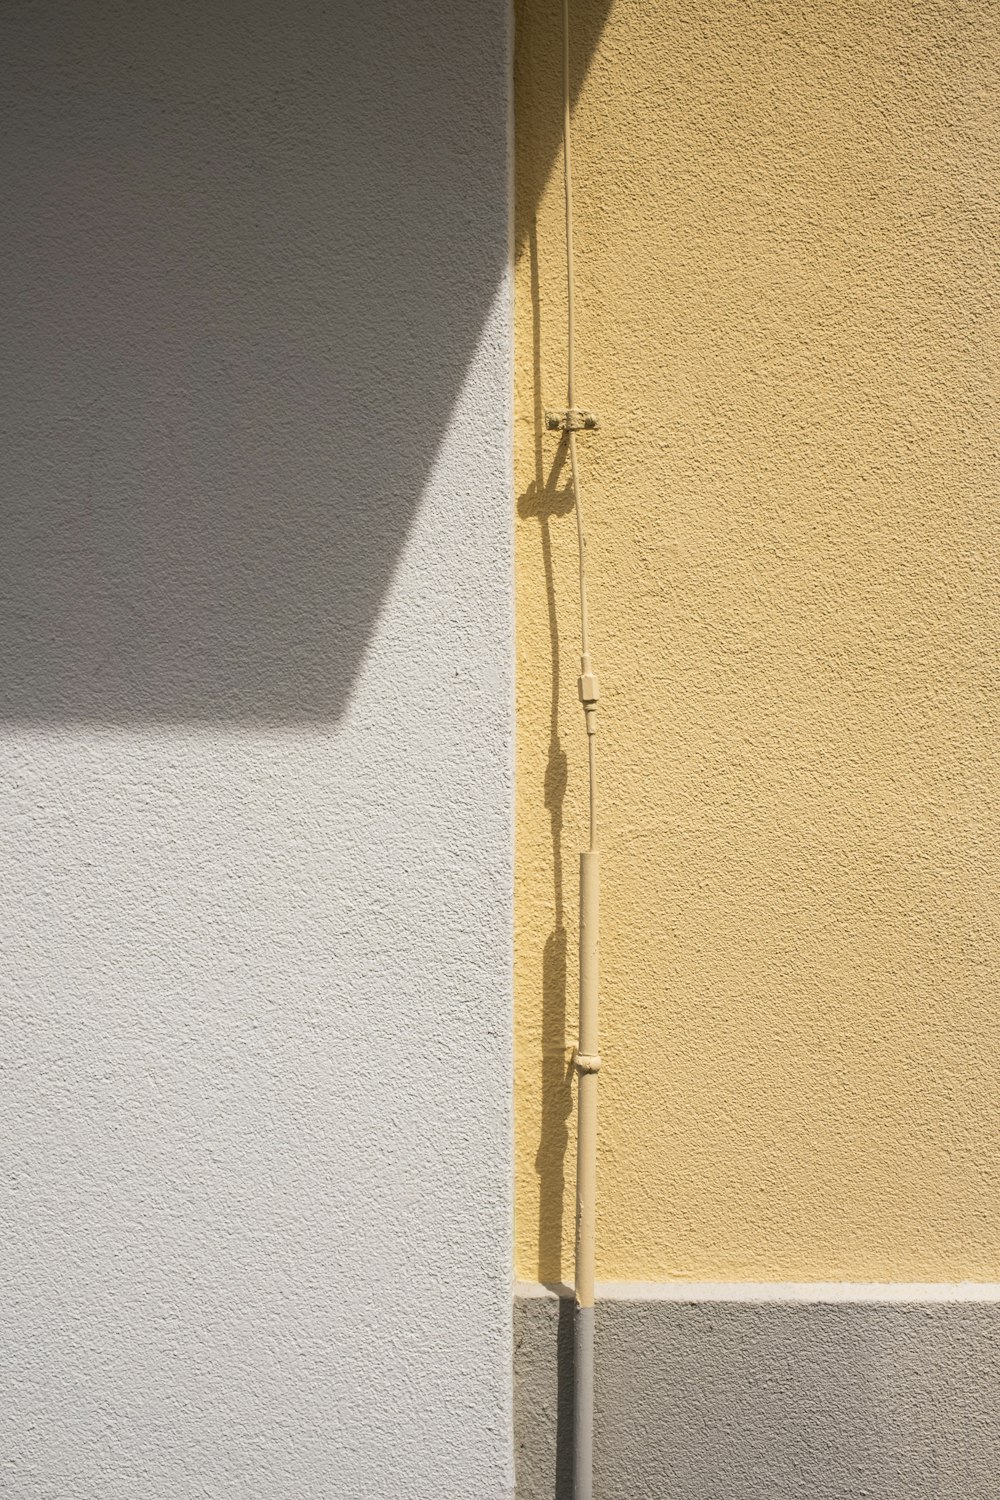 Porte en bois jaune avec levier de porte argenté